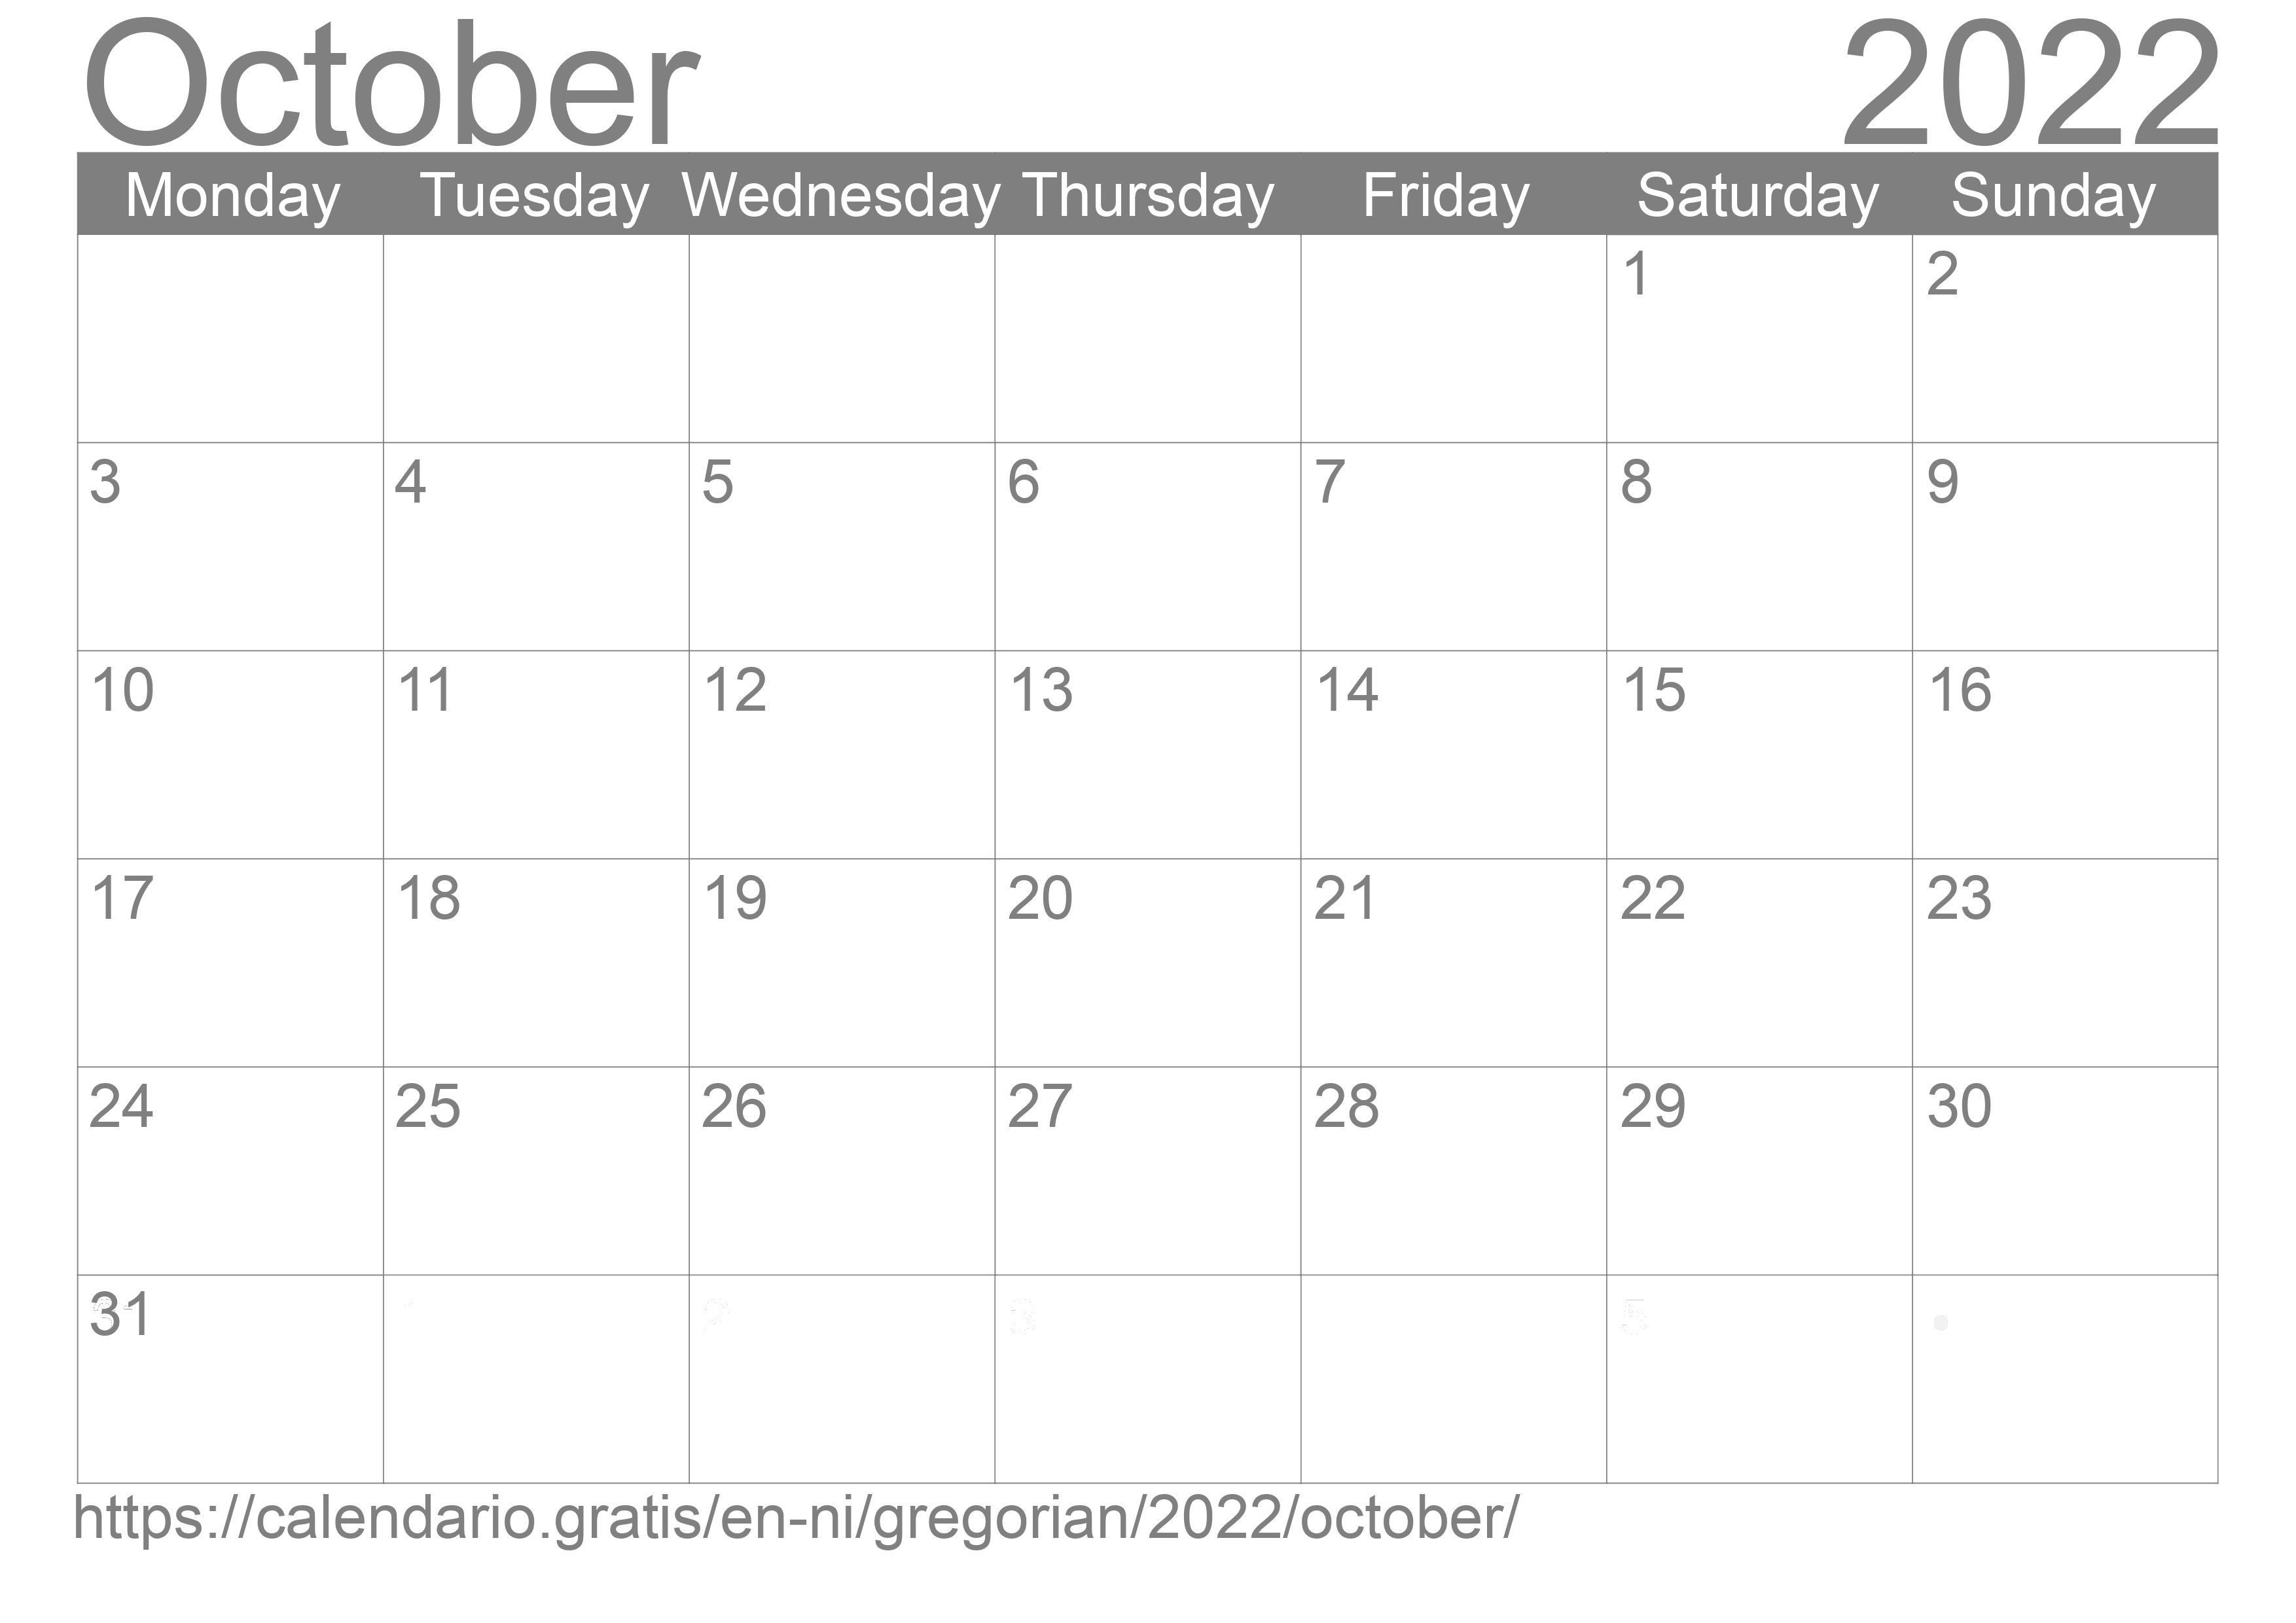 Calendar October 2022 to print